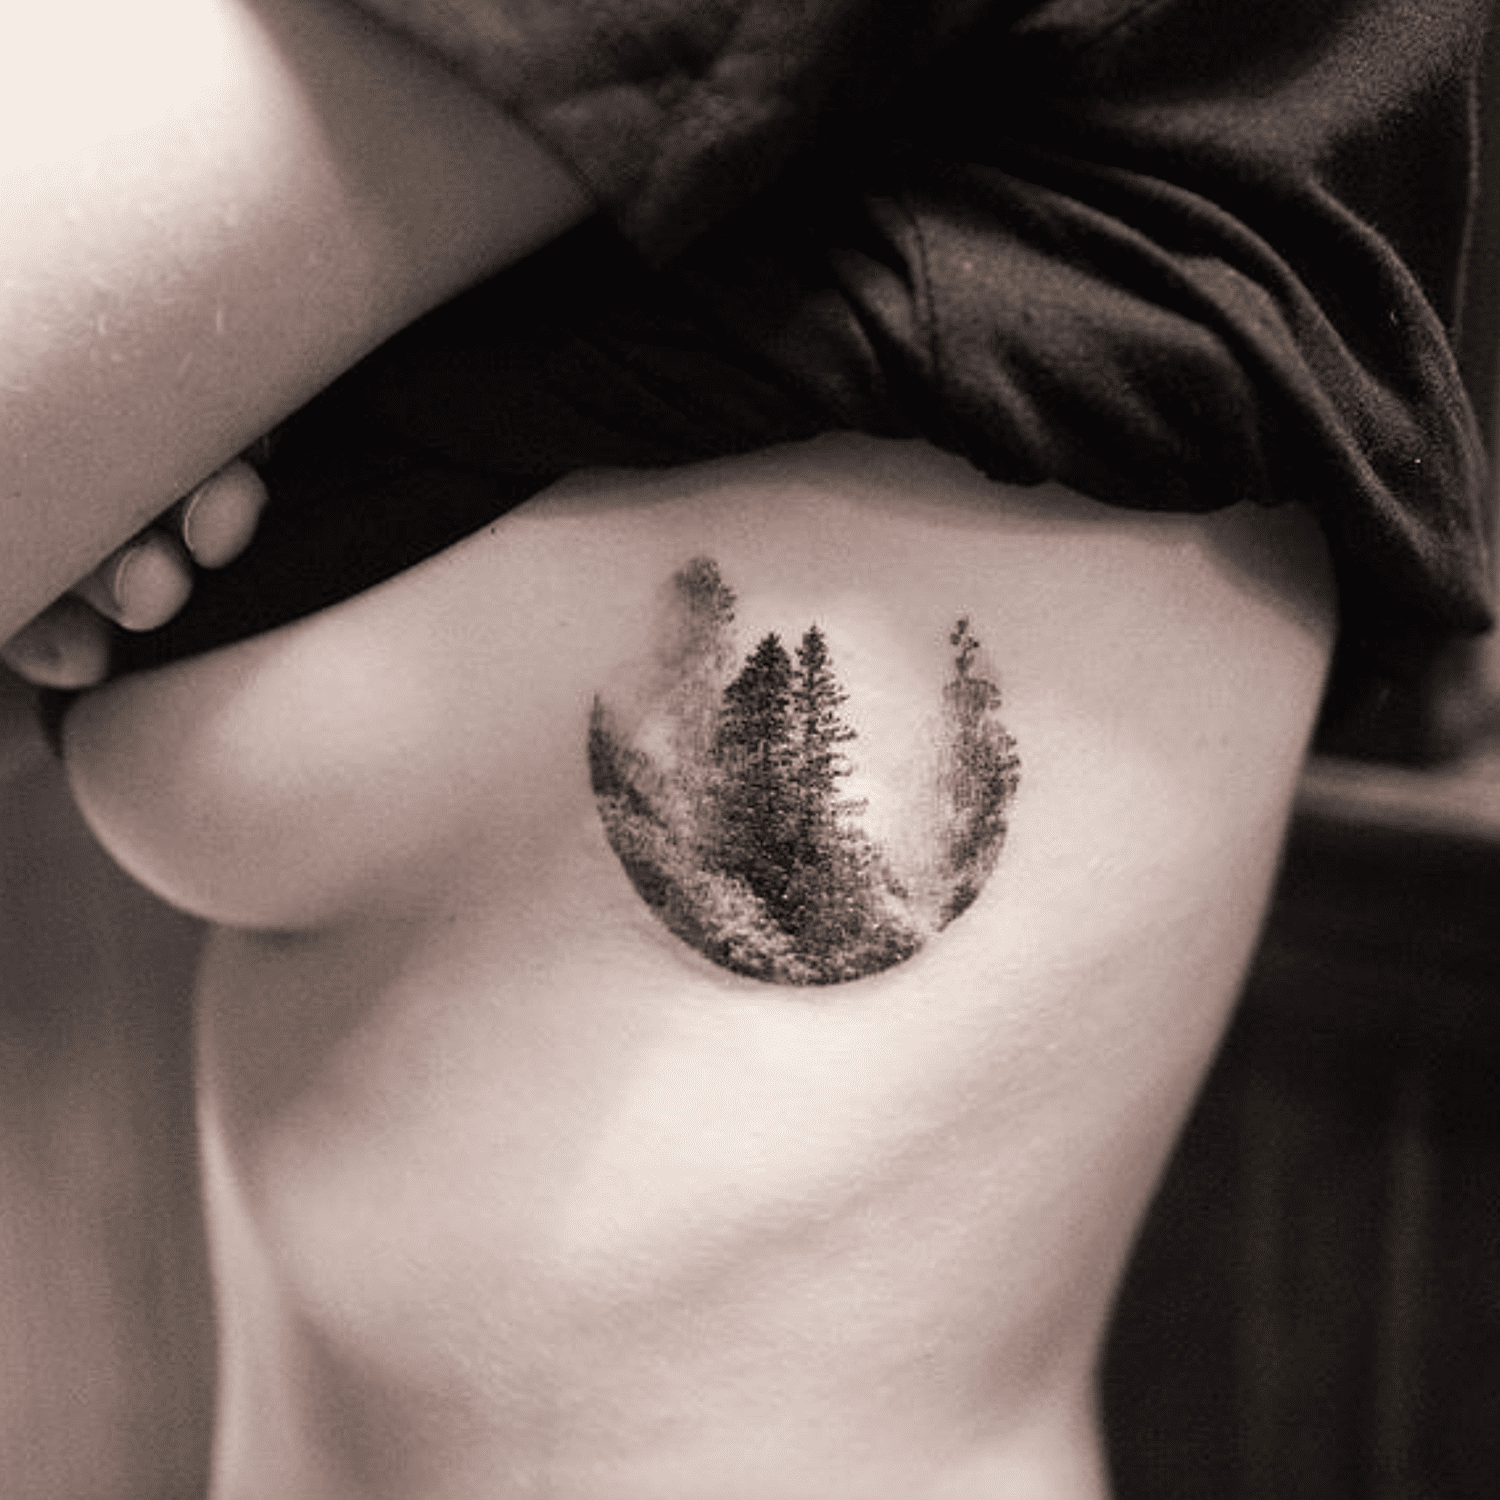 Tatuagem no peito em forma de vinheta circular de floresta